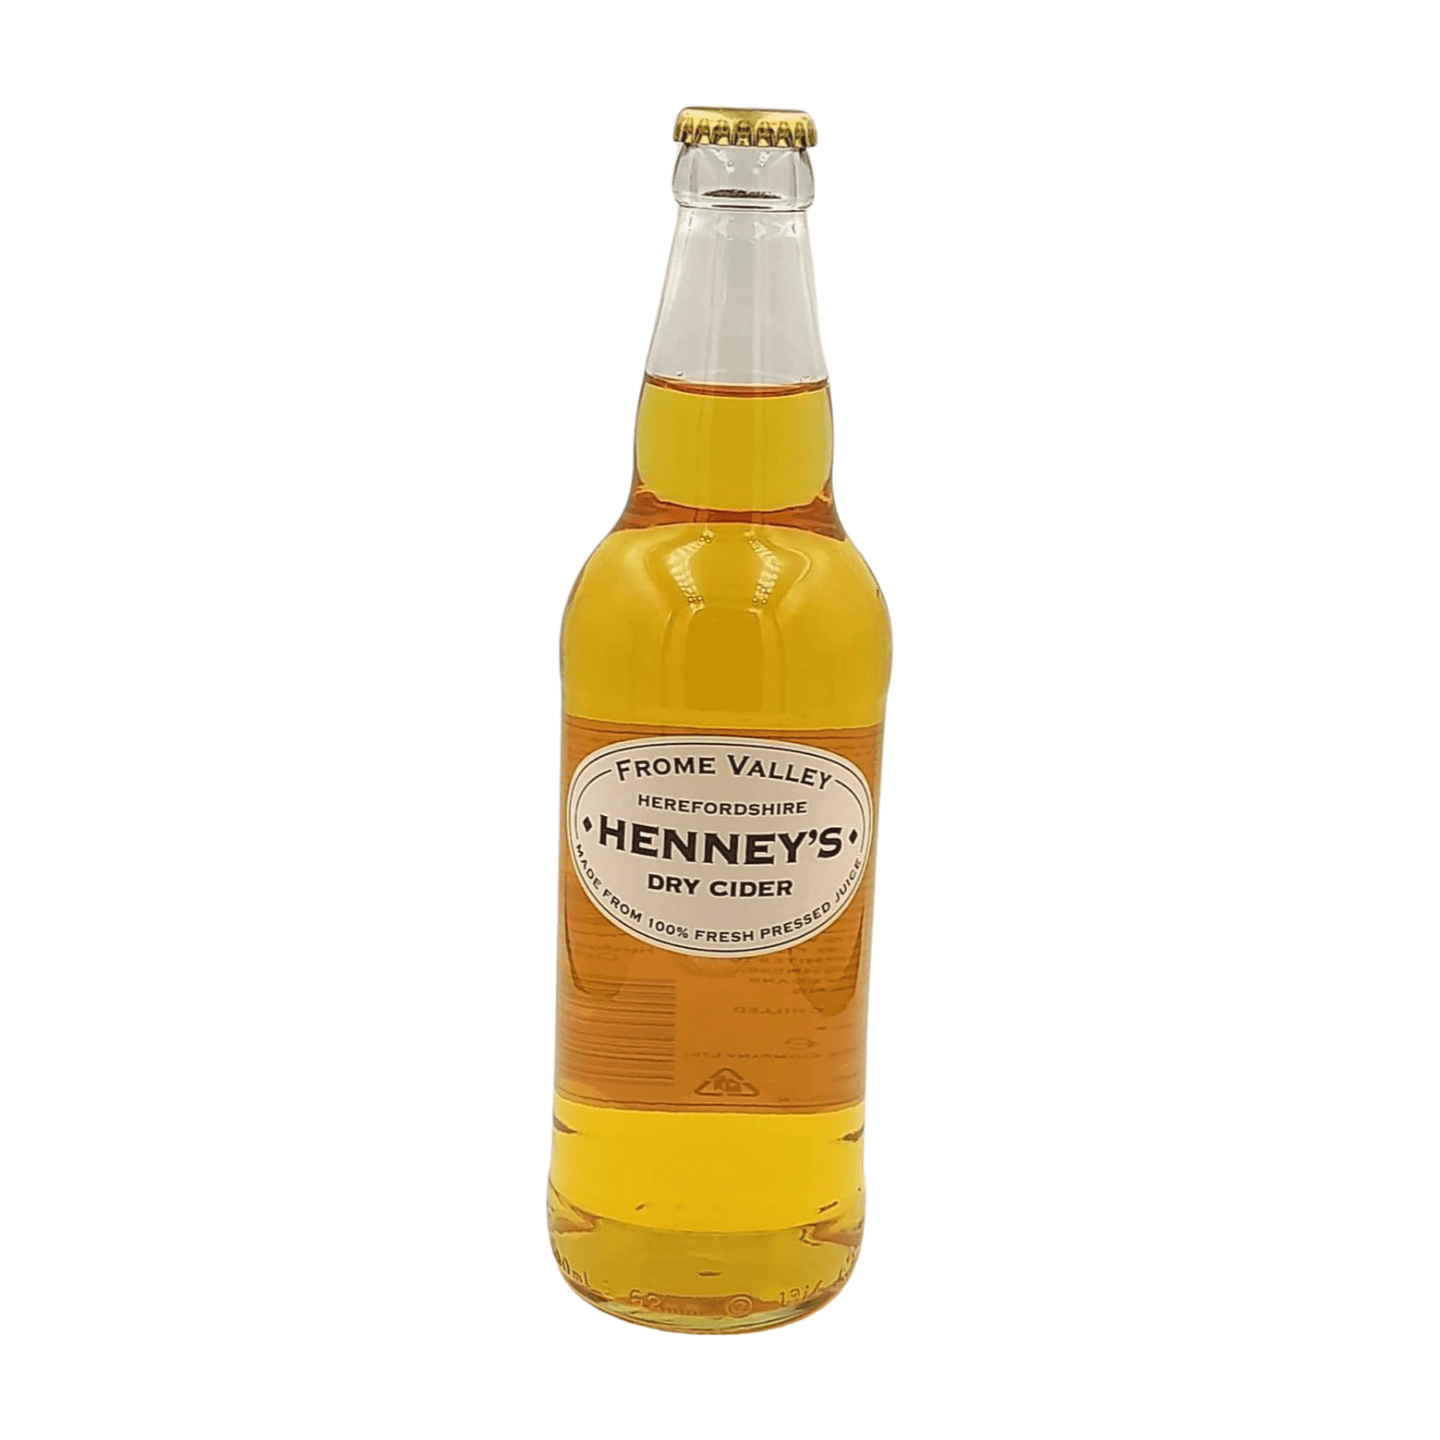 Henney's Dry Cider | Cider Webshop Online Verdins Bierwinkel Rotterdam